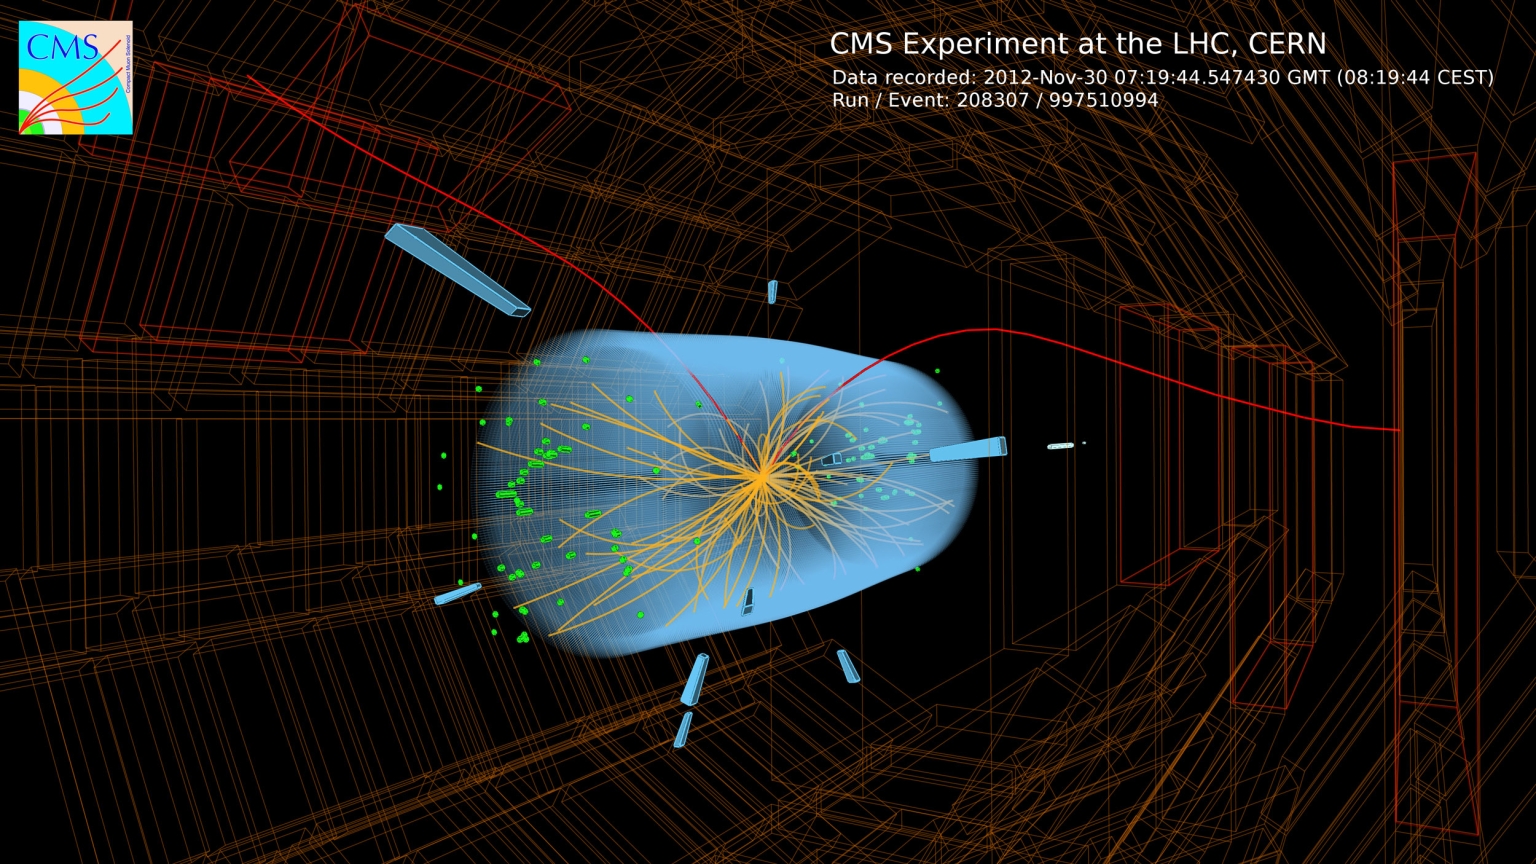 Les lignes rouges de cet «évènement» observé sur le détecteur CMS du LHC indiquent les traces de deux muons. Ces traces sont courbes à cause du champ magnétique. Les lignes dorées correspondent à différentes traces de particules au cœur du détecteur.